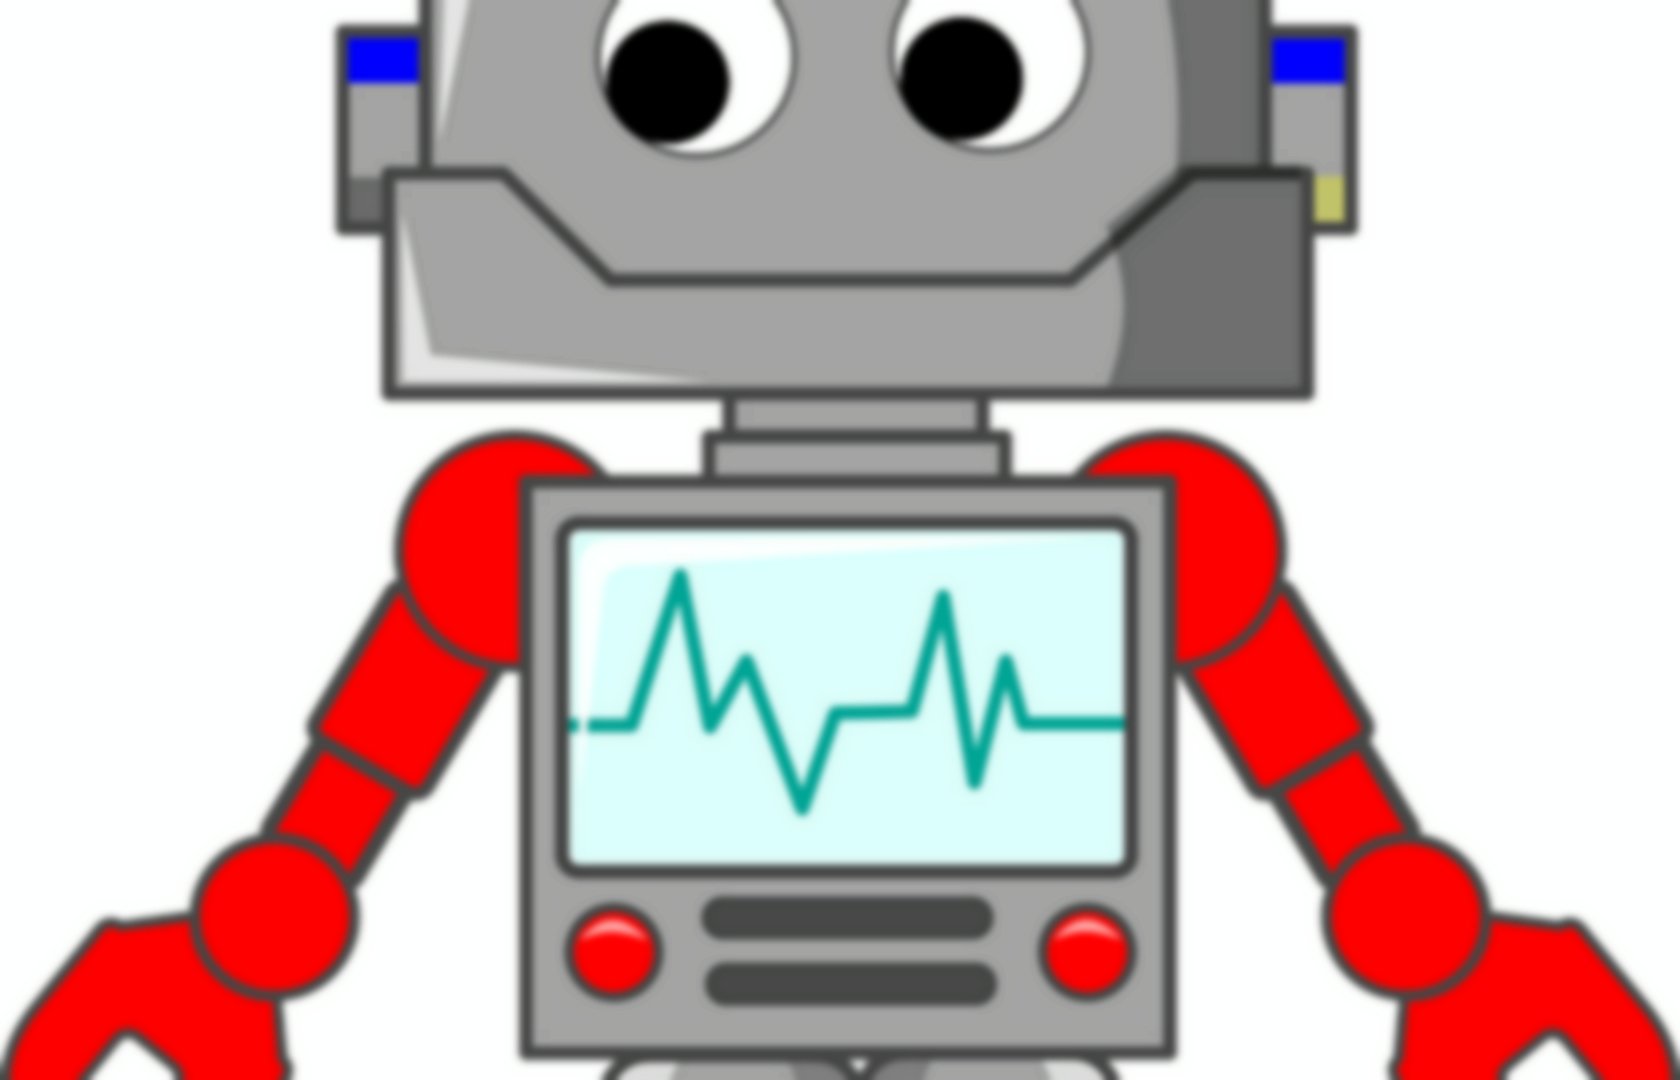 Nina, un robot humanoïde qui apprend à parler